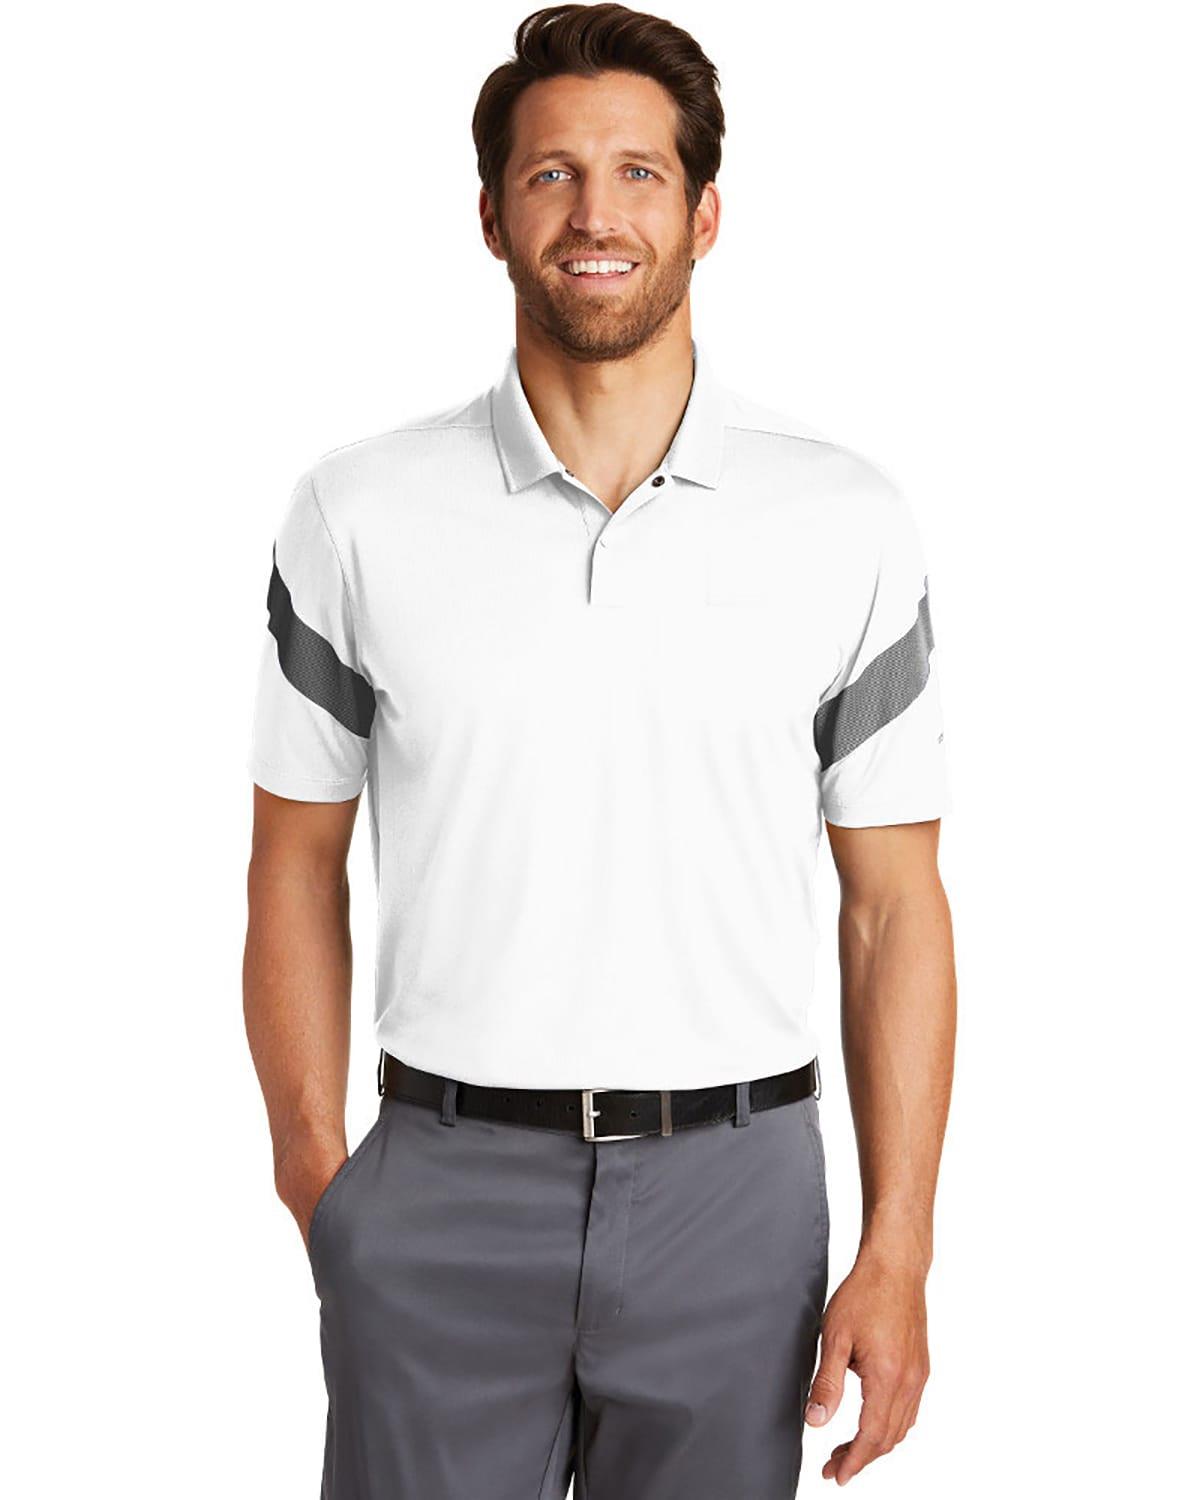 Nike Golf 881657 Mens Dri Fit Commander Polo Shirt